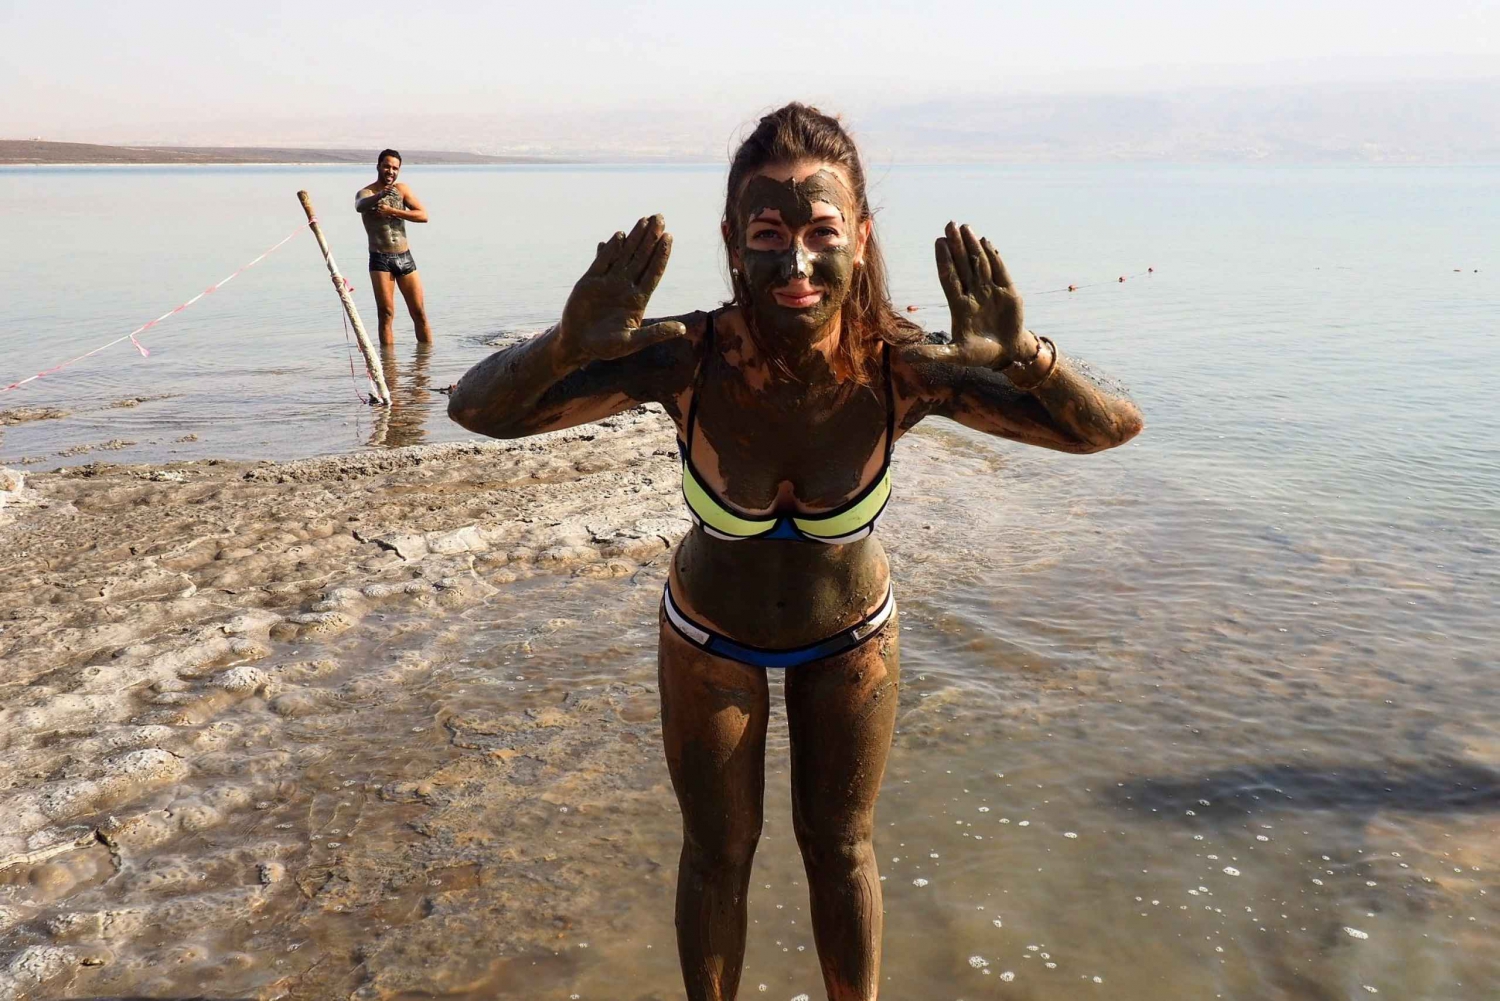 Masada, Ein Gedi & Dead Sea Day Trip: from Jerusalem